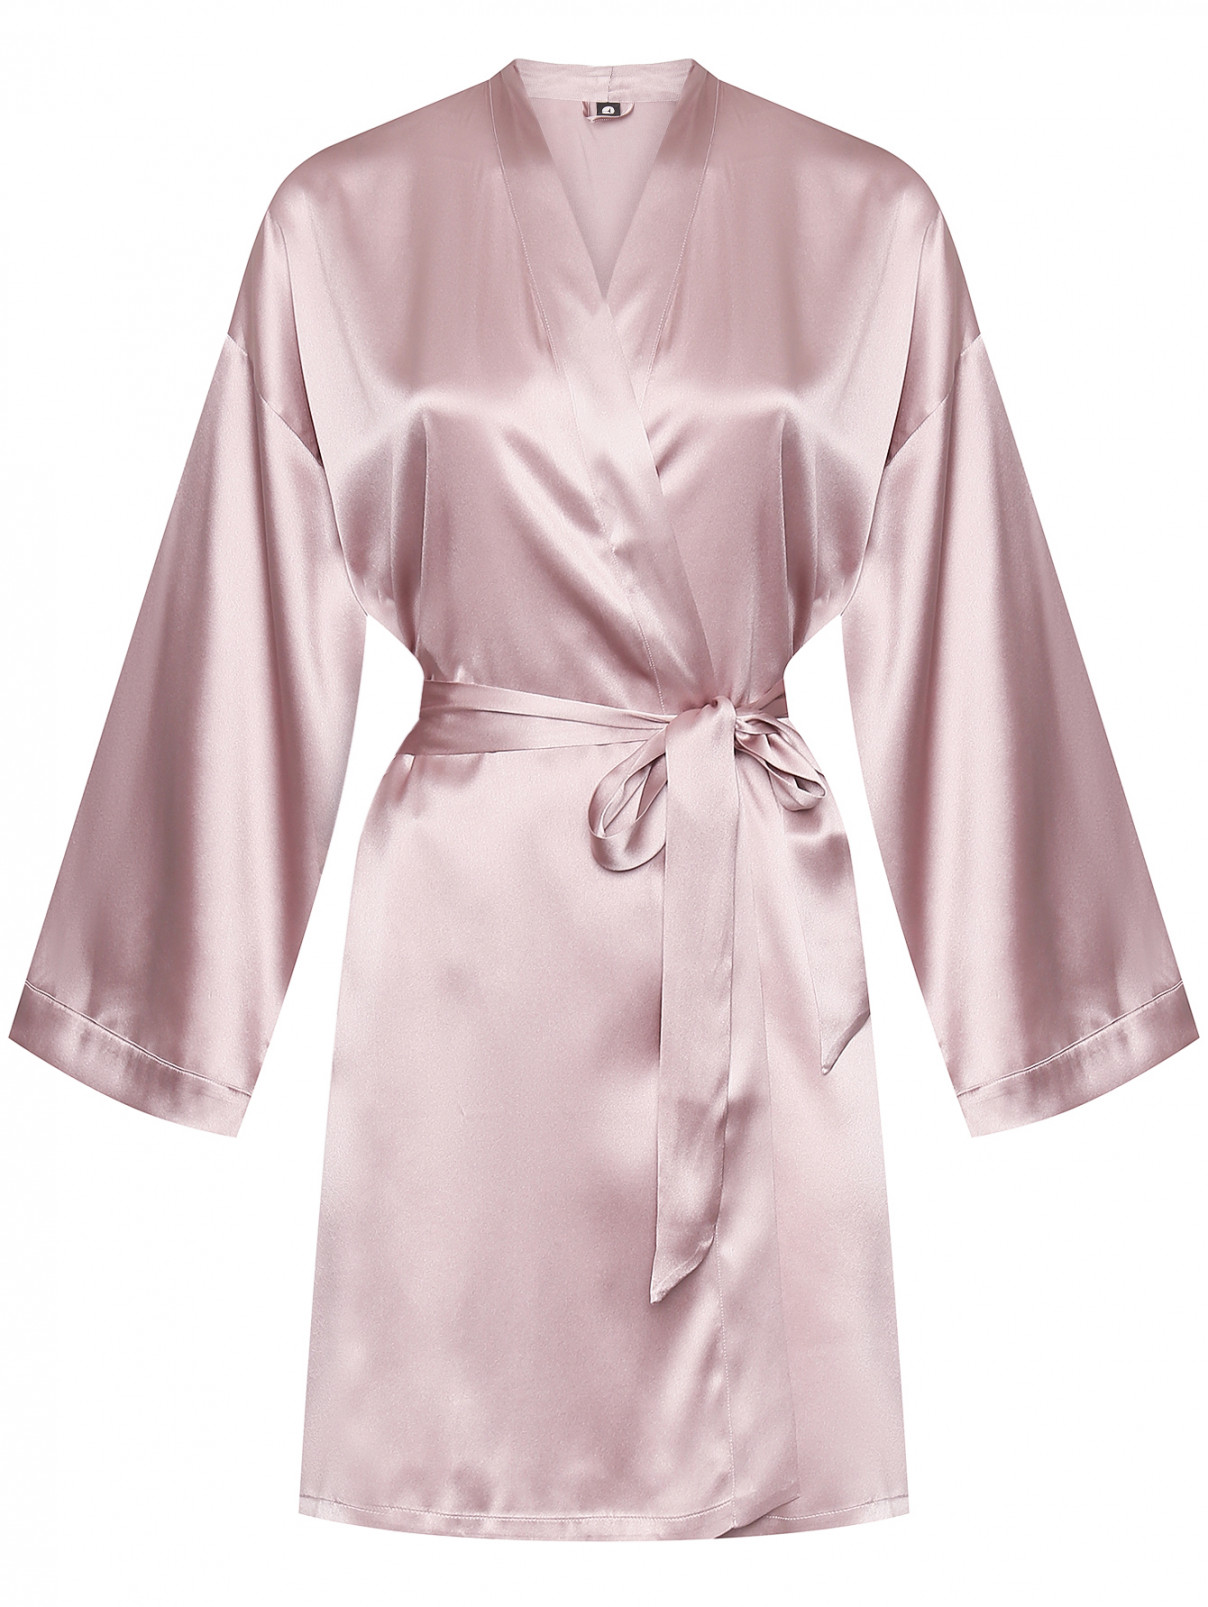 Атласный халат с поясом Exilia  –  Общий вид  – Цвет:  Розовый